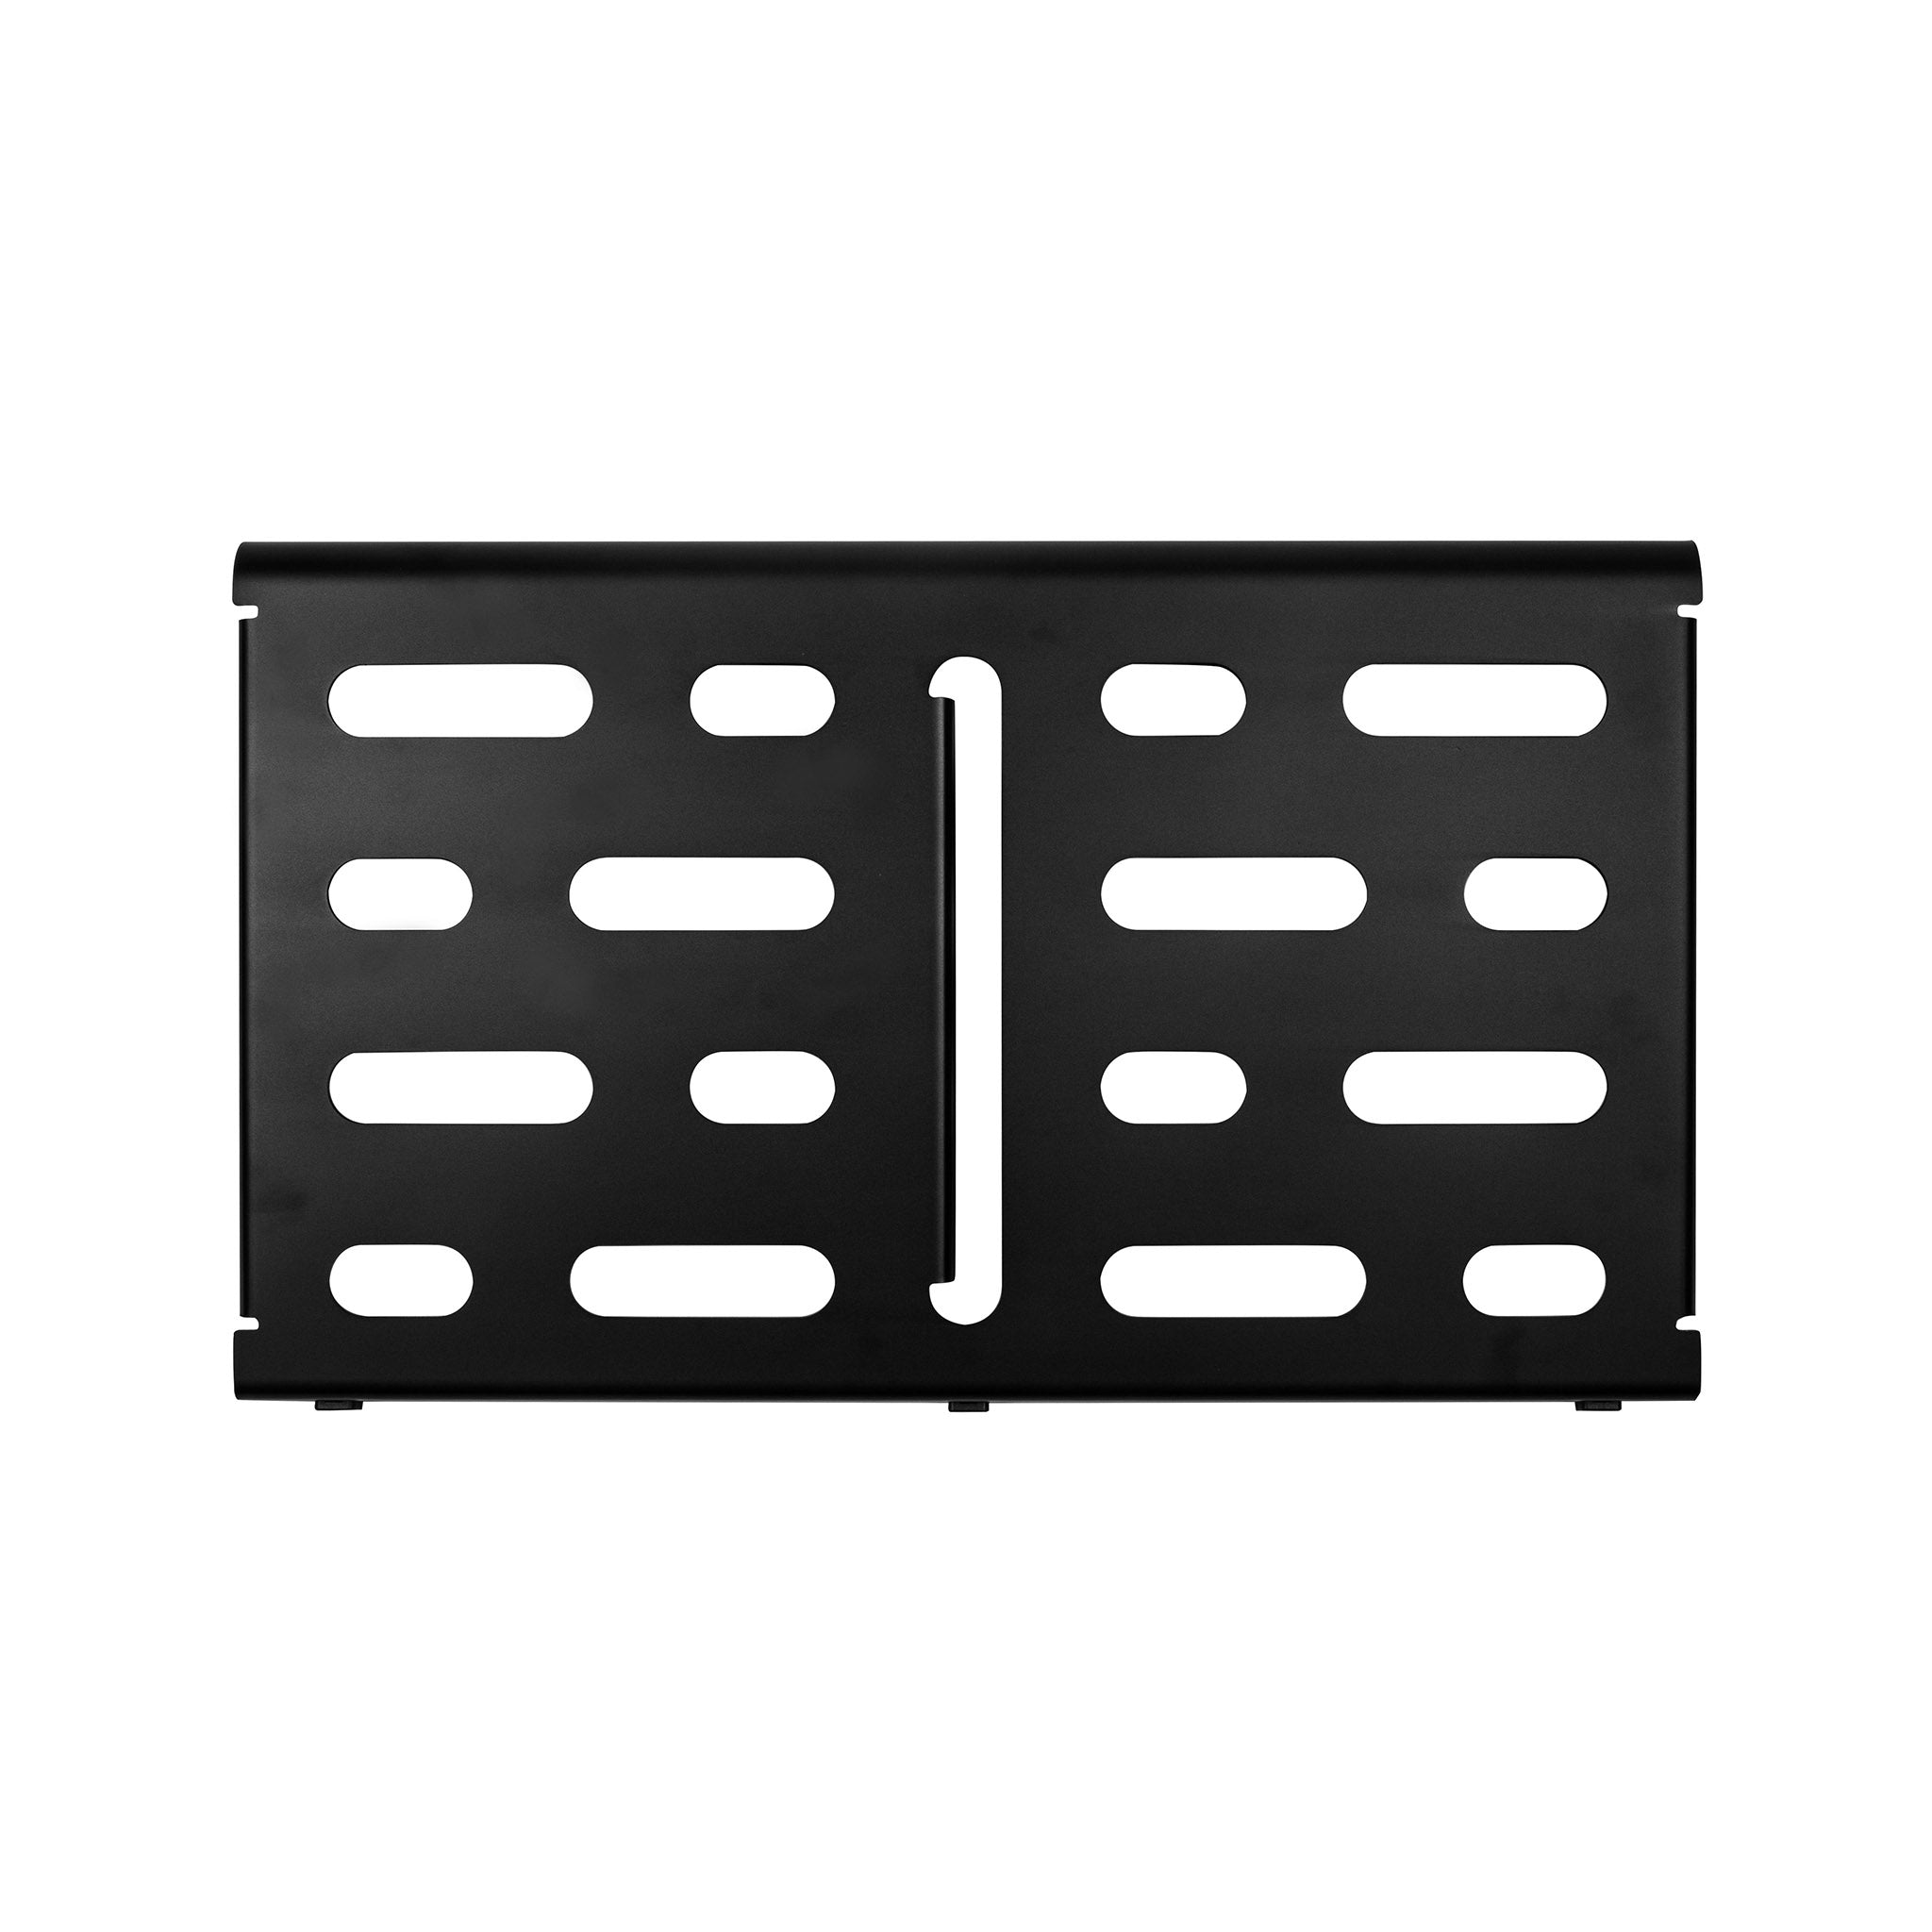 MONO Pedalboard Medium, Black and Tour Accessory Case 2.0, Black - ZOSO MUSIC